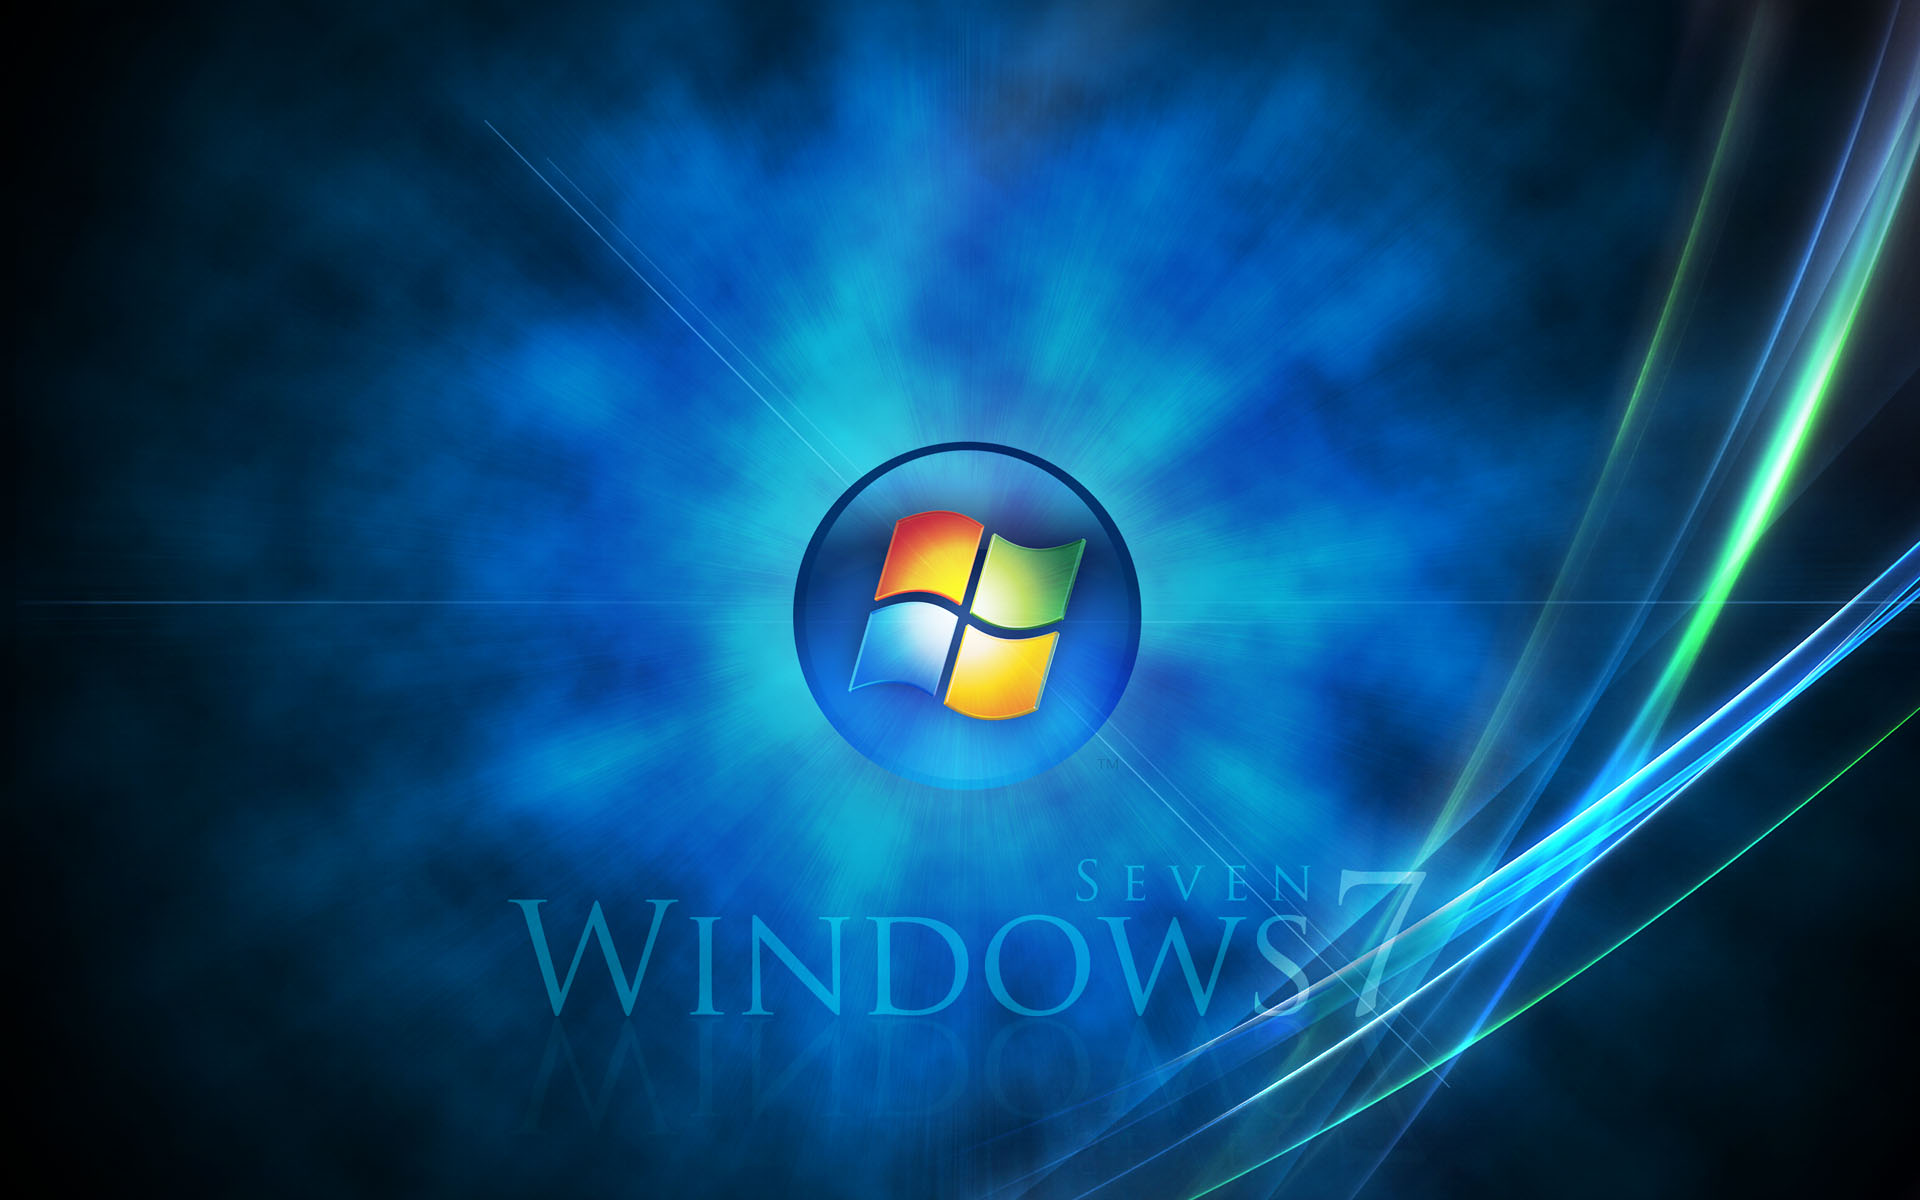 壁纸1920x1200Windows7 4 13壁纸 Windows7壁纸 Windows7图片 Windows7素材 系统壁纸 系统图库 系统图片素材桌面壁纸